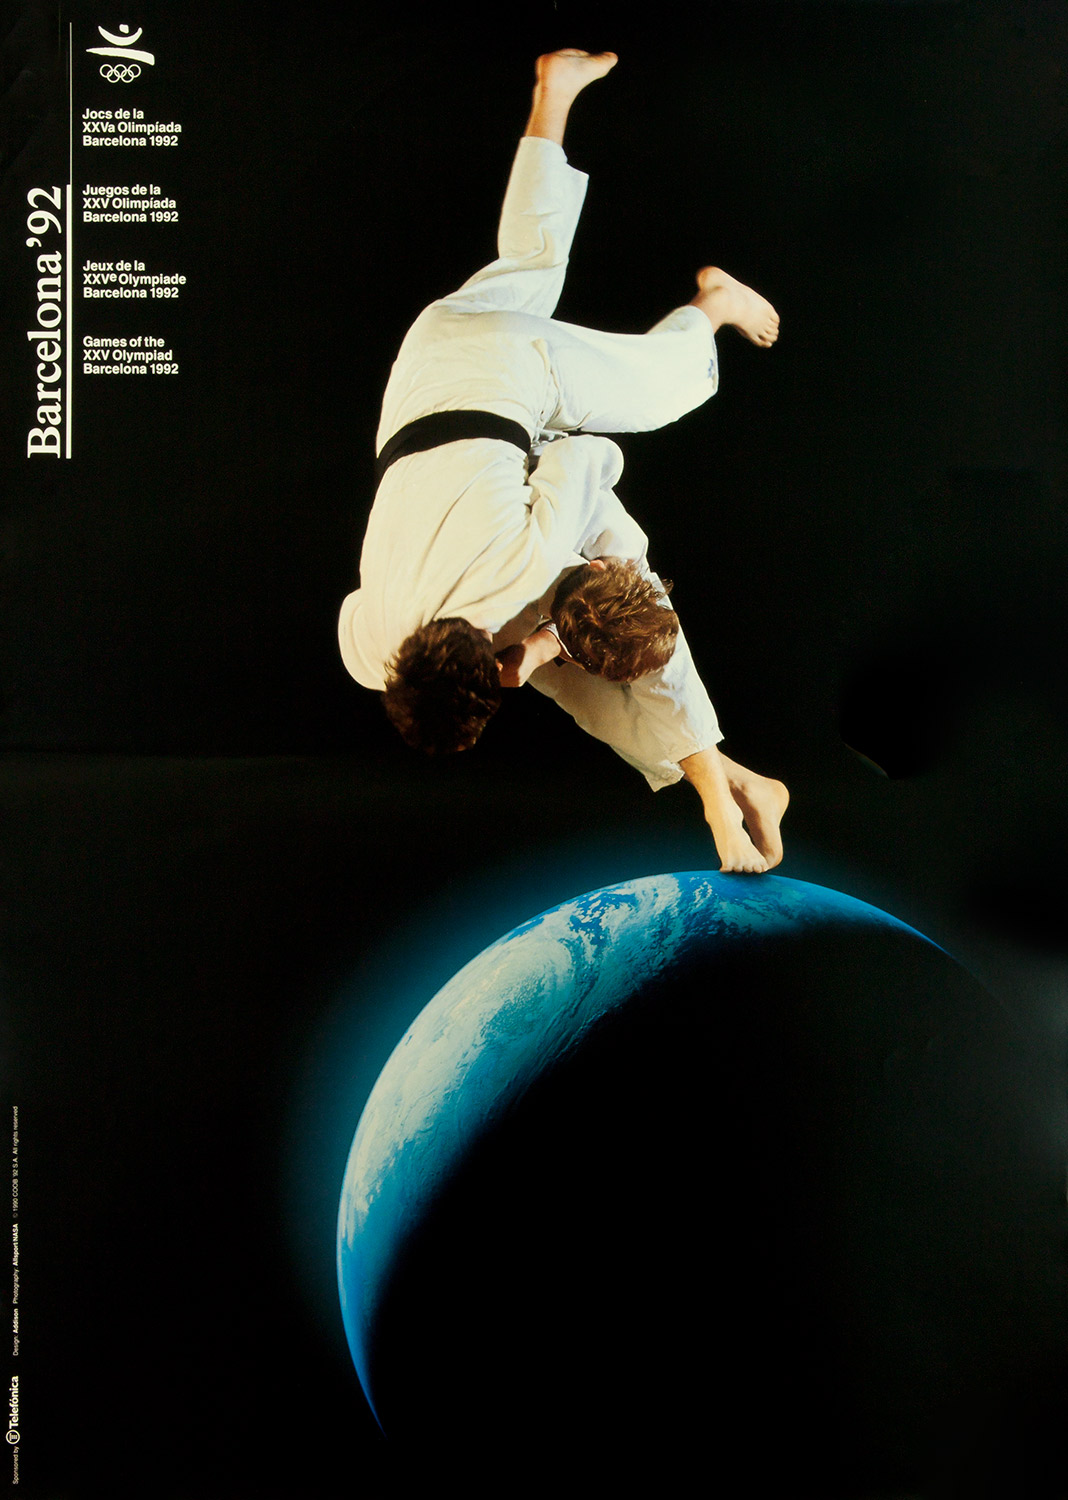 Plakat mit Abbildung zweier Judoka während eines Wurfes. Im Hintergrund der Planet Erde